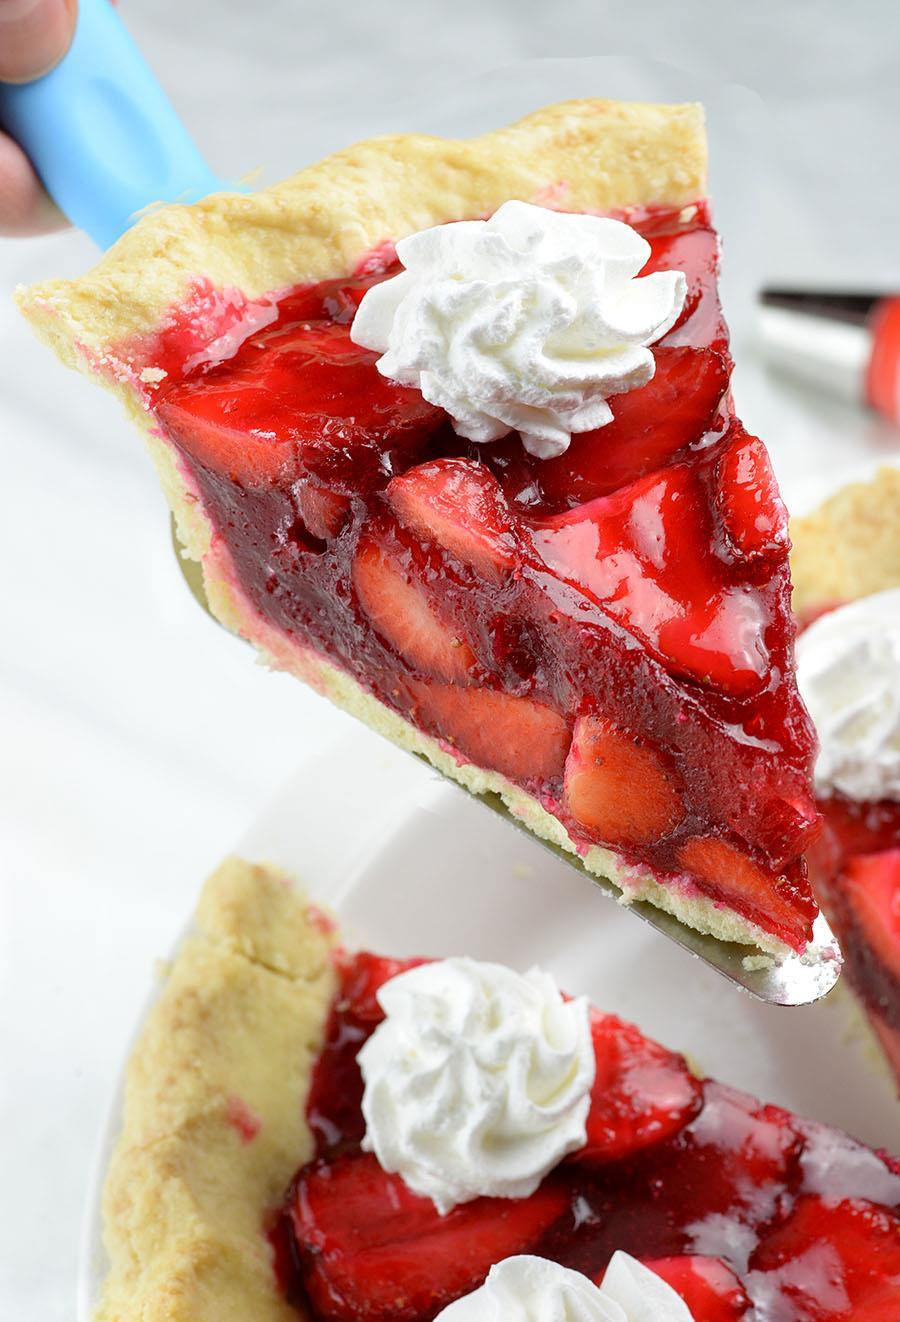 Strawberry Dessert Ideas
 Fresh Strawberry Pie